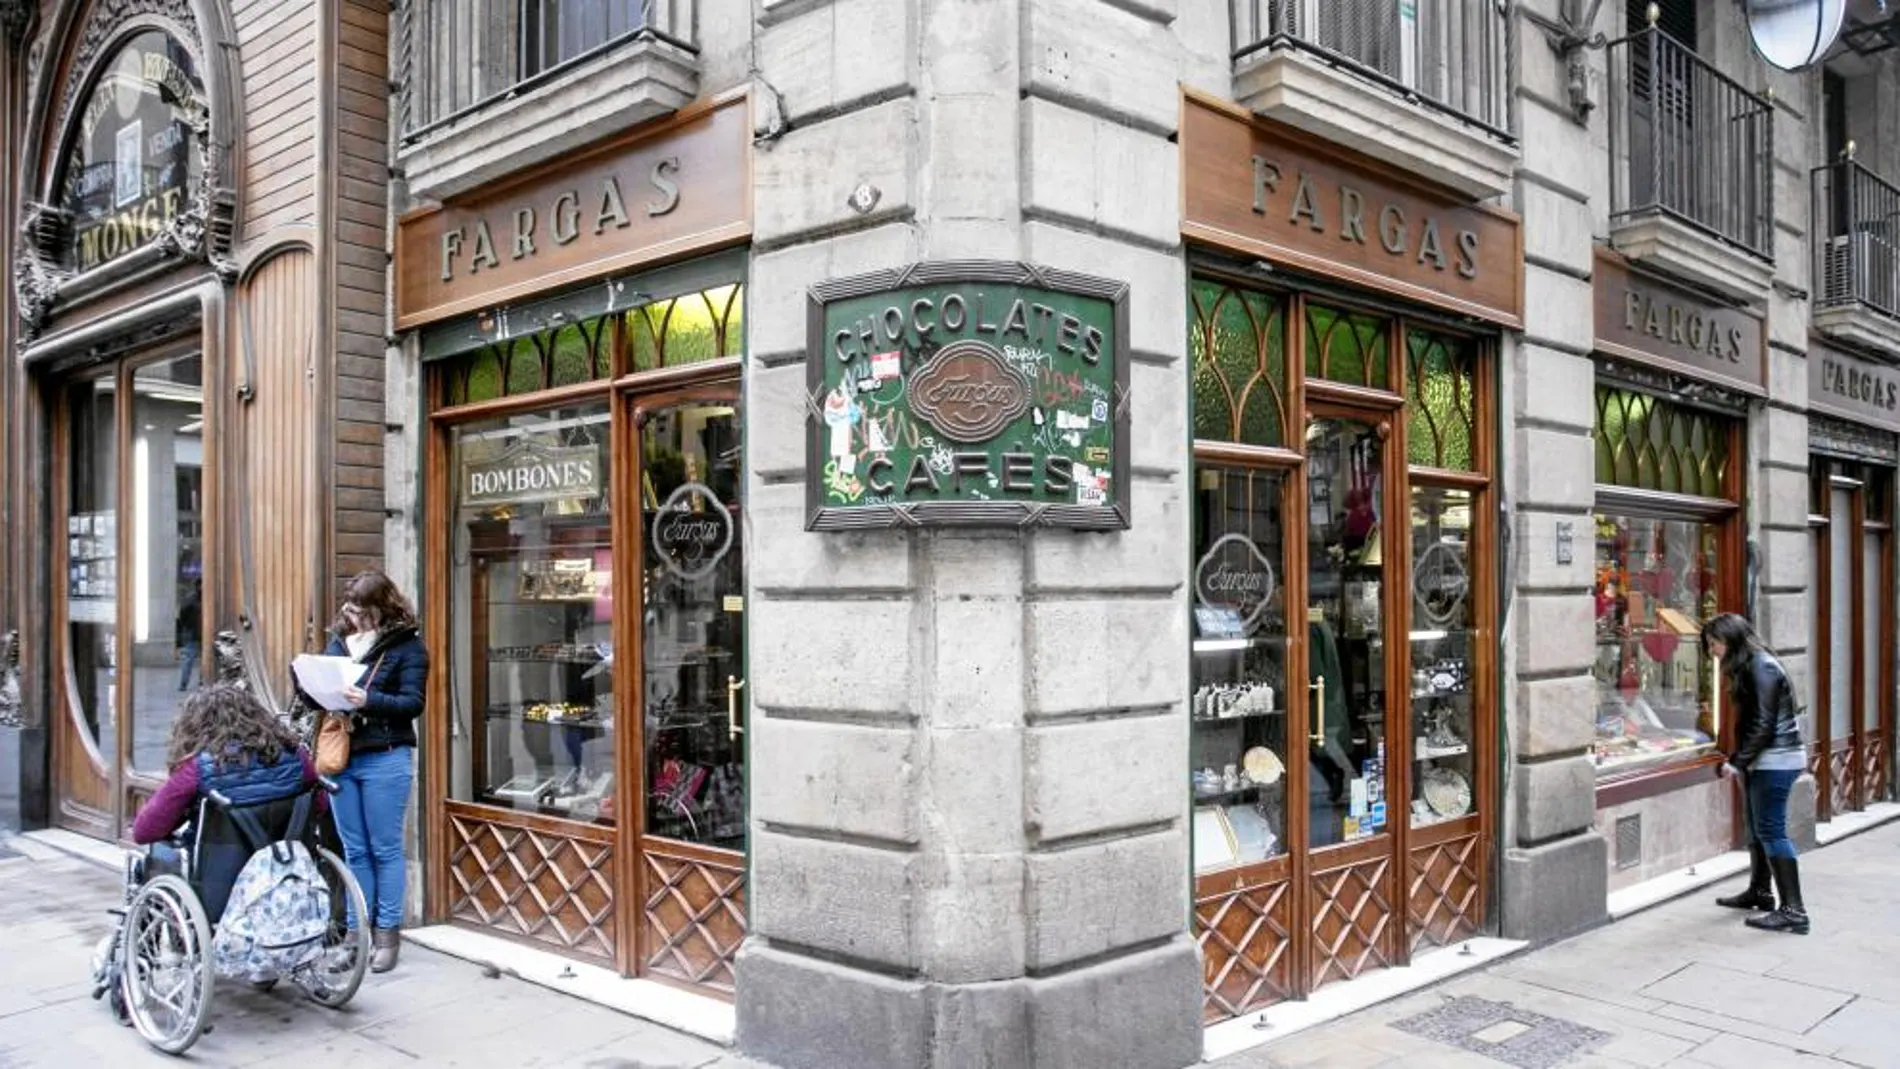 La chocolatería Fargas está en pleno centro, en la calle Fargas